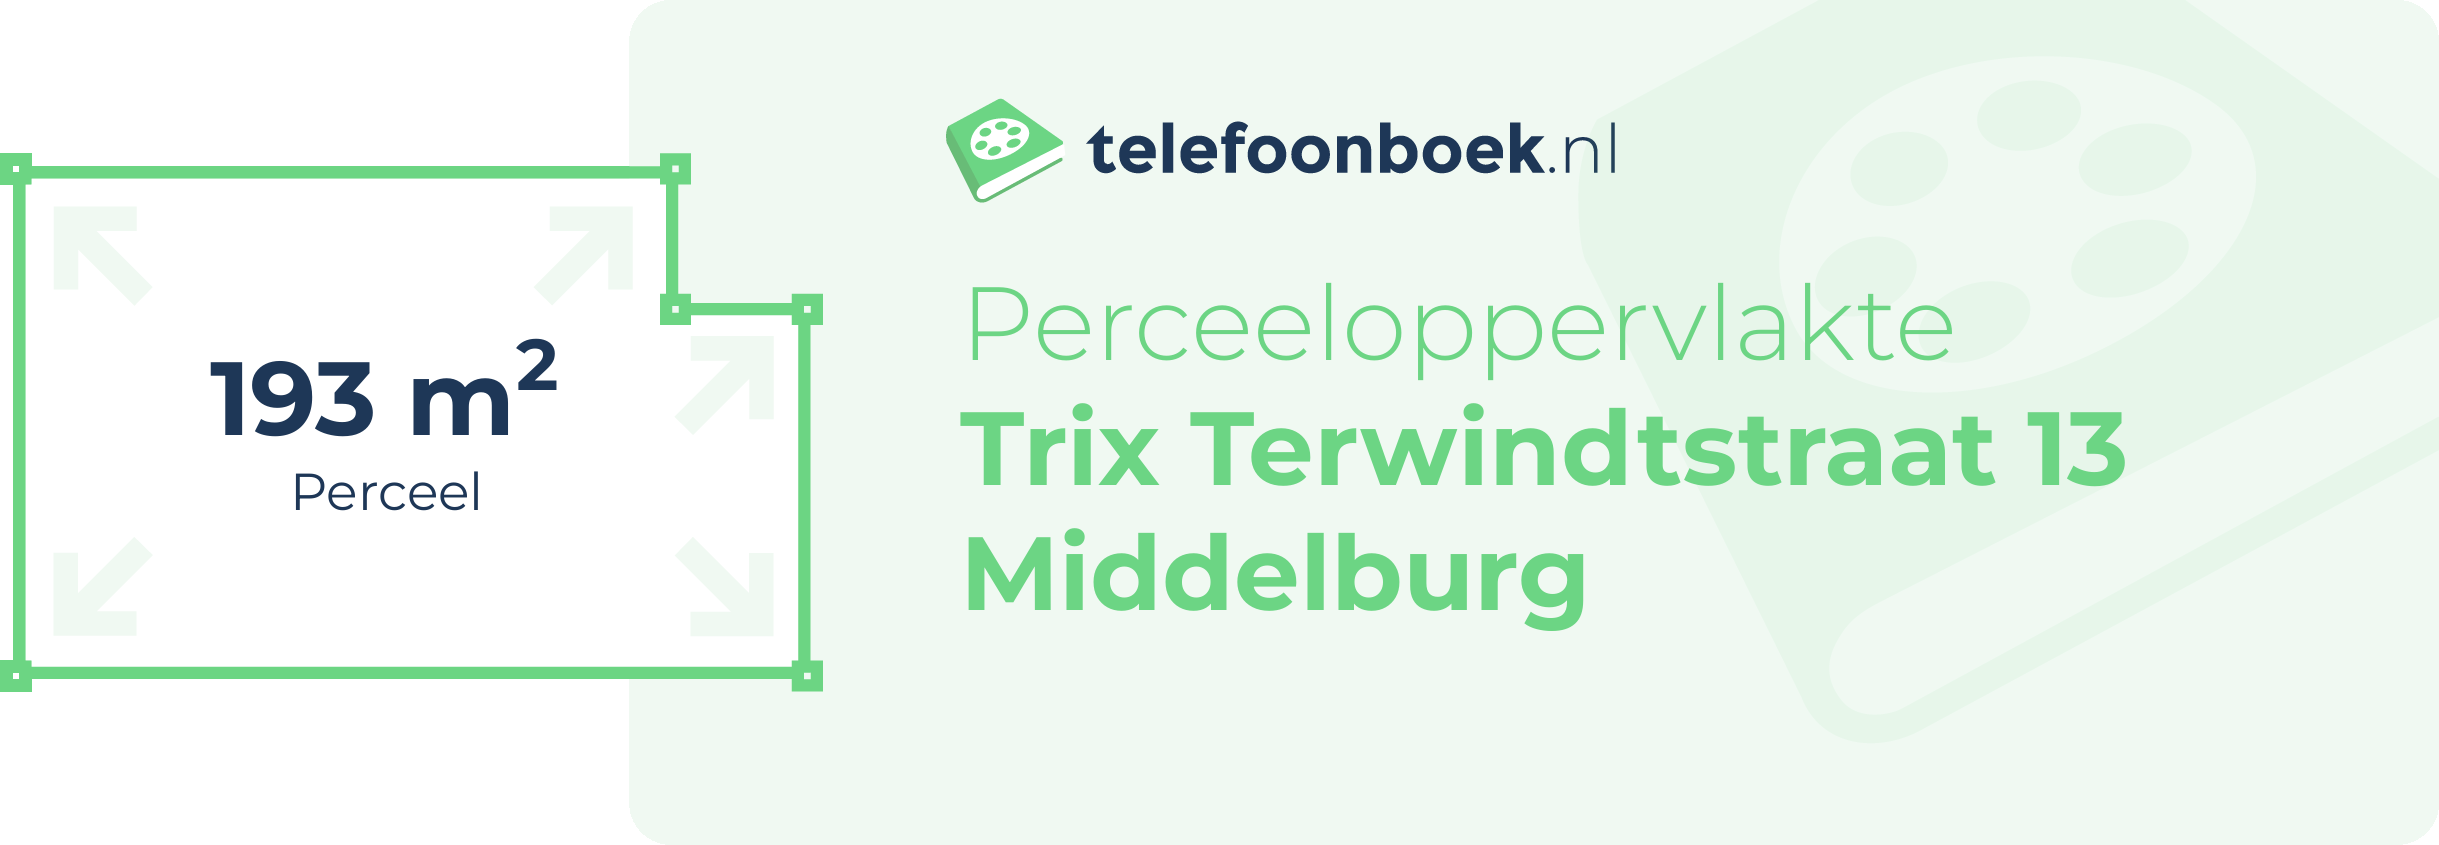 Perceeloppervlakte Trix Terwindtstraat 13 Middelburg